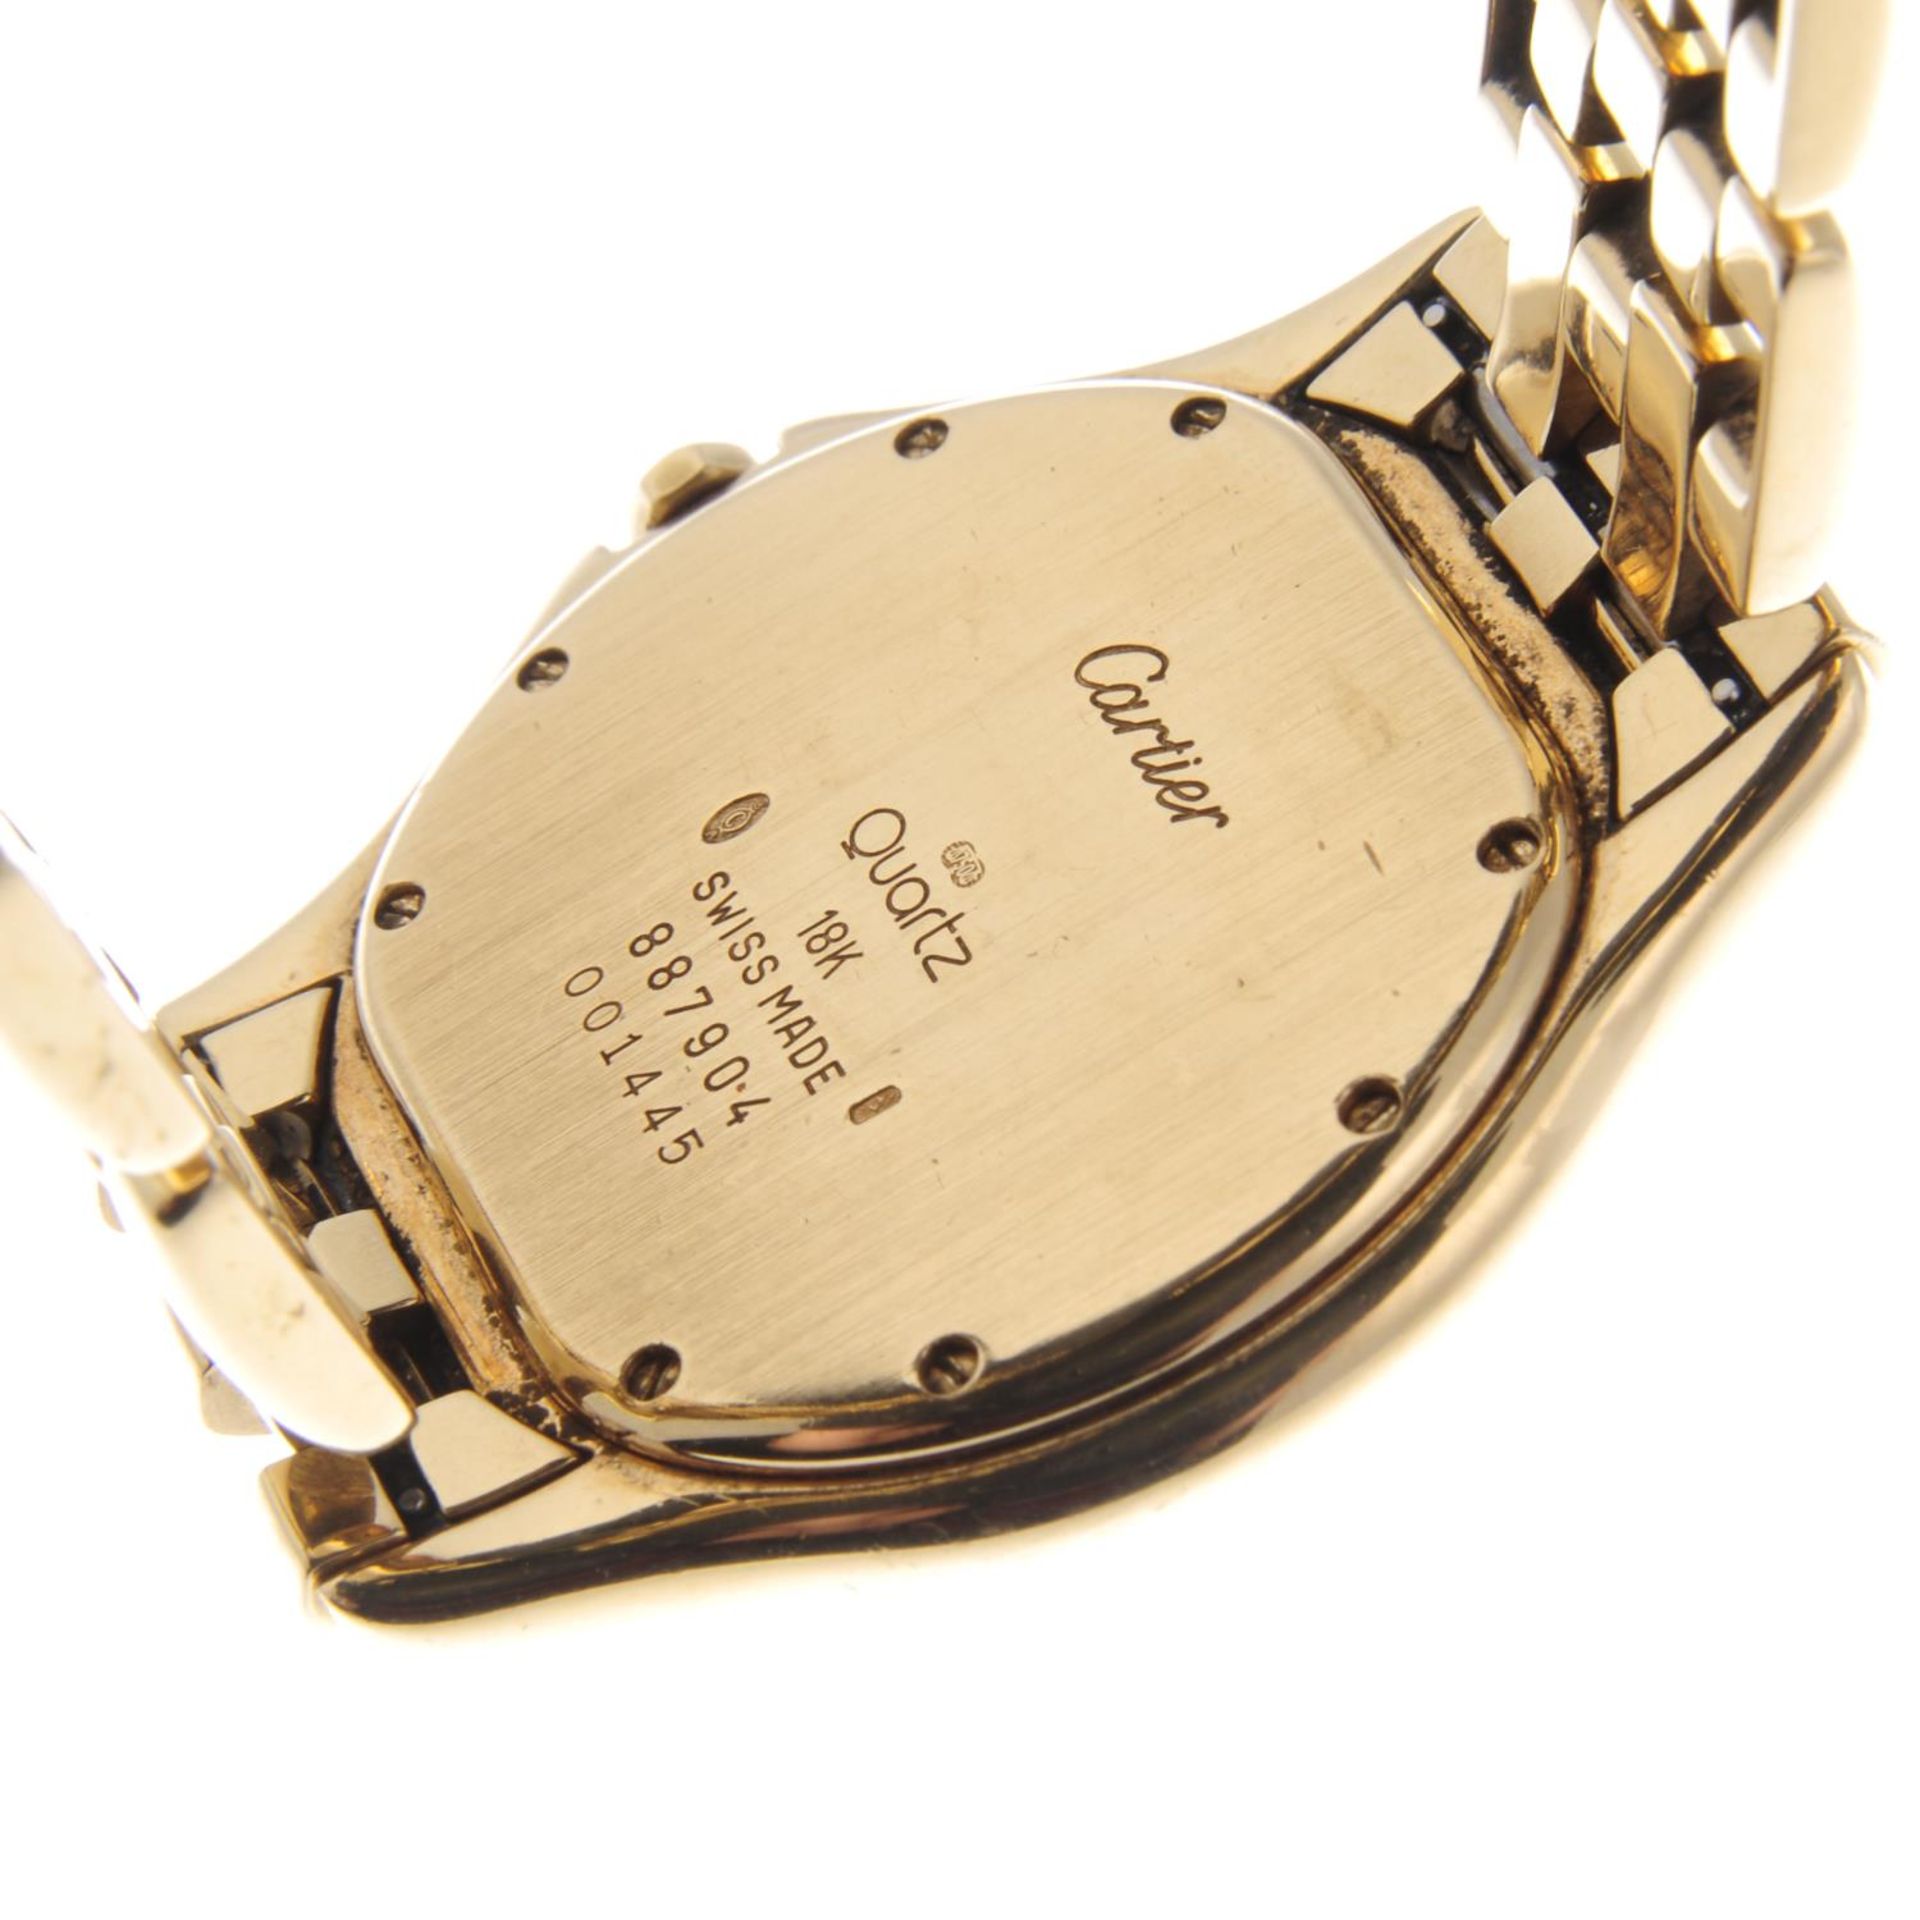 CARTIER - a gentleman's Cougar bracelet watch. - Image 5 of 5